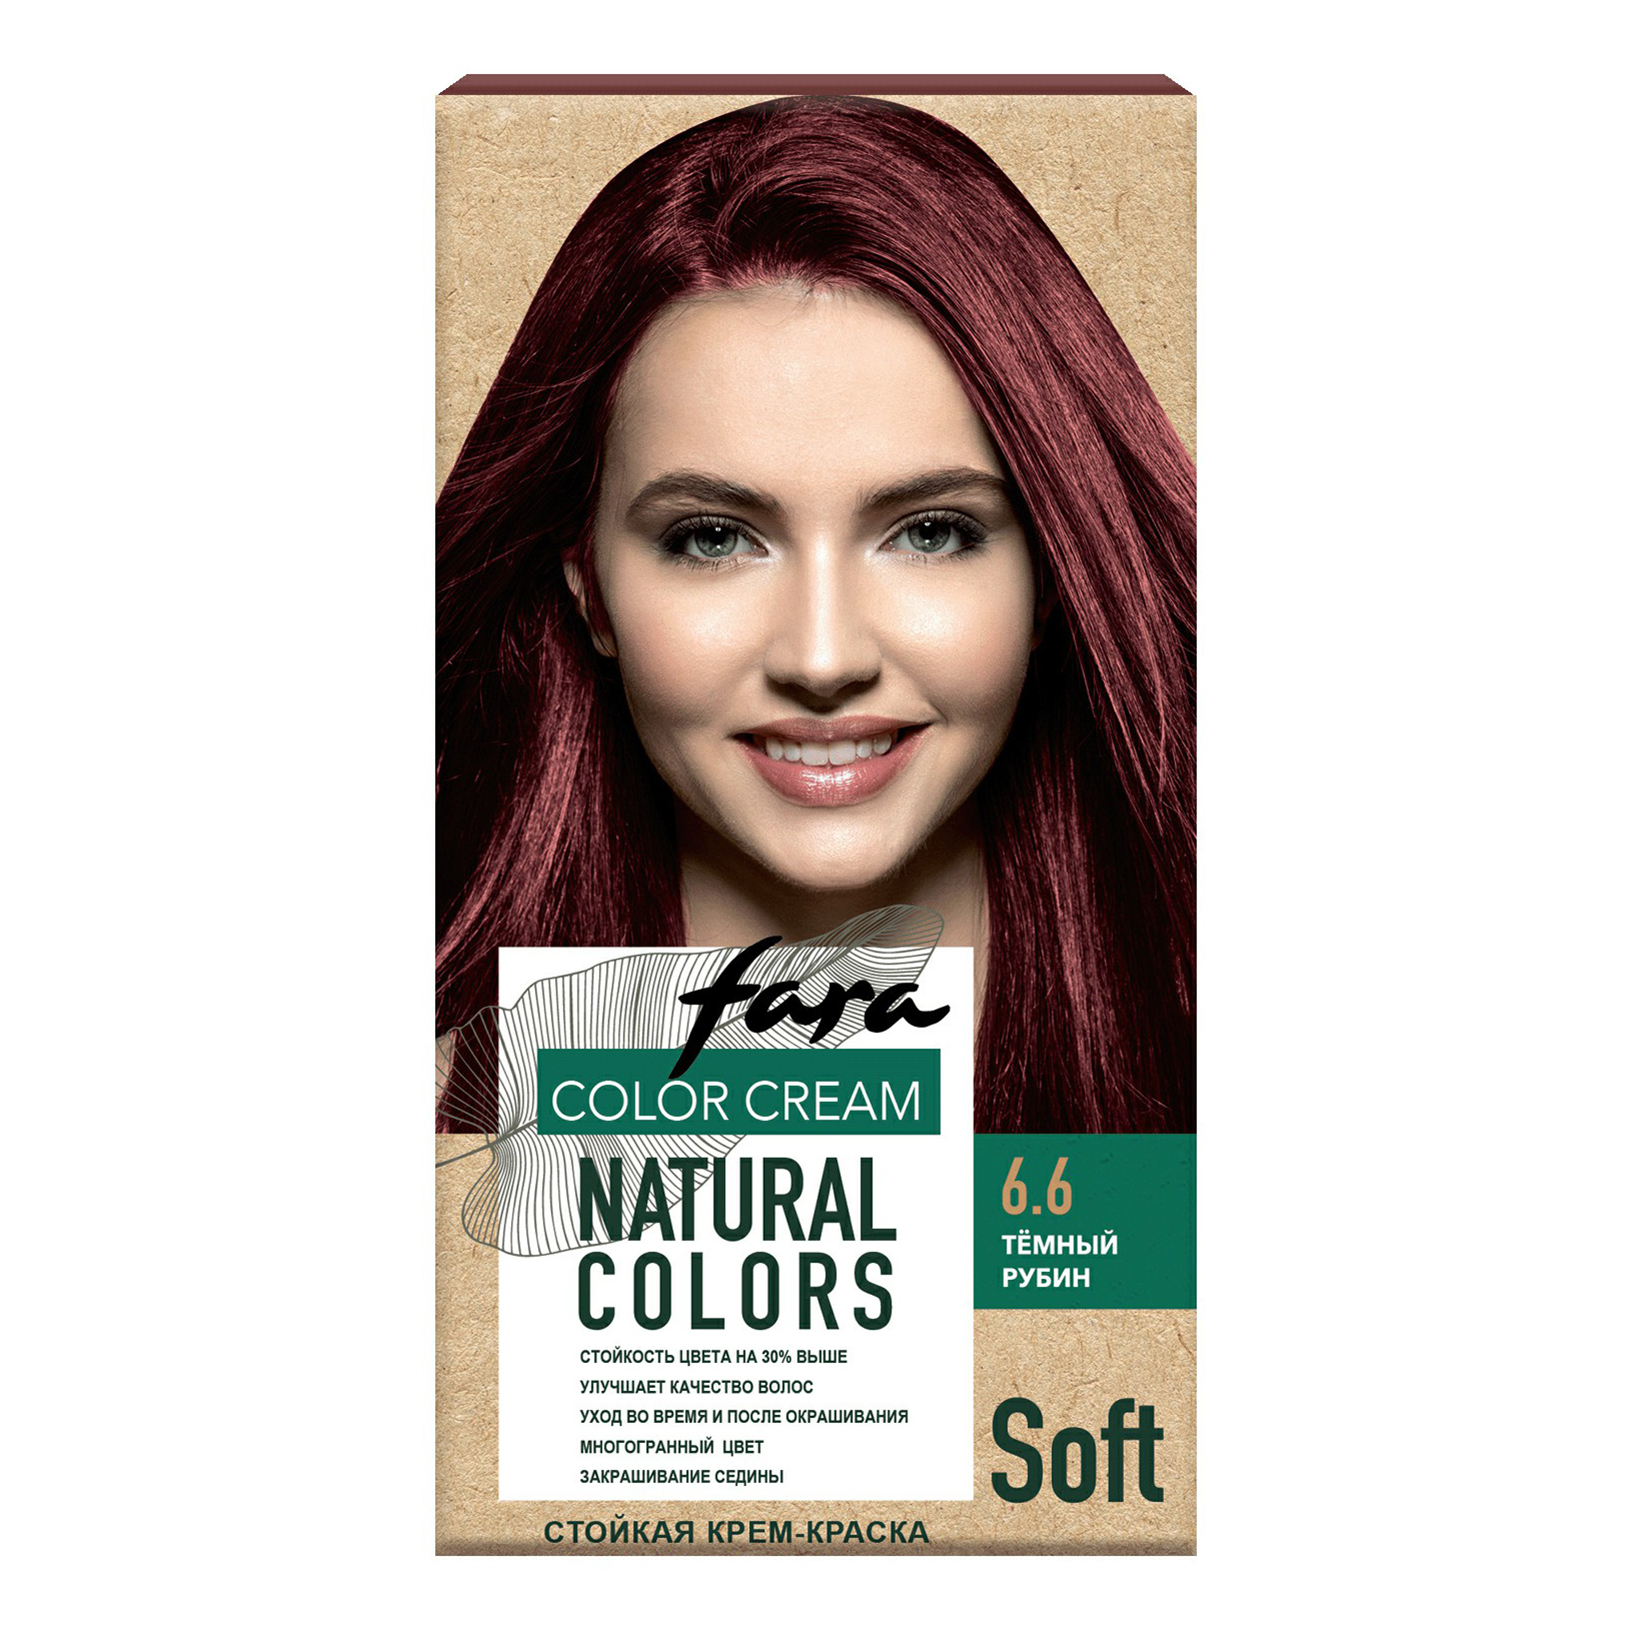 Крем-краска для волос Fara Natural Colors Soft 324 Темный рубин 150 мл крем краска farmavita suprema color 6 31 темный блондин золотисто пепельный 60 мл